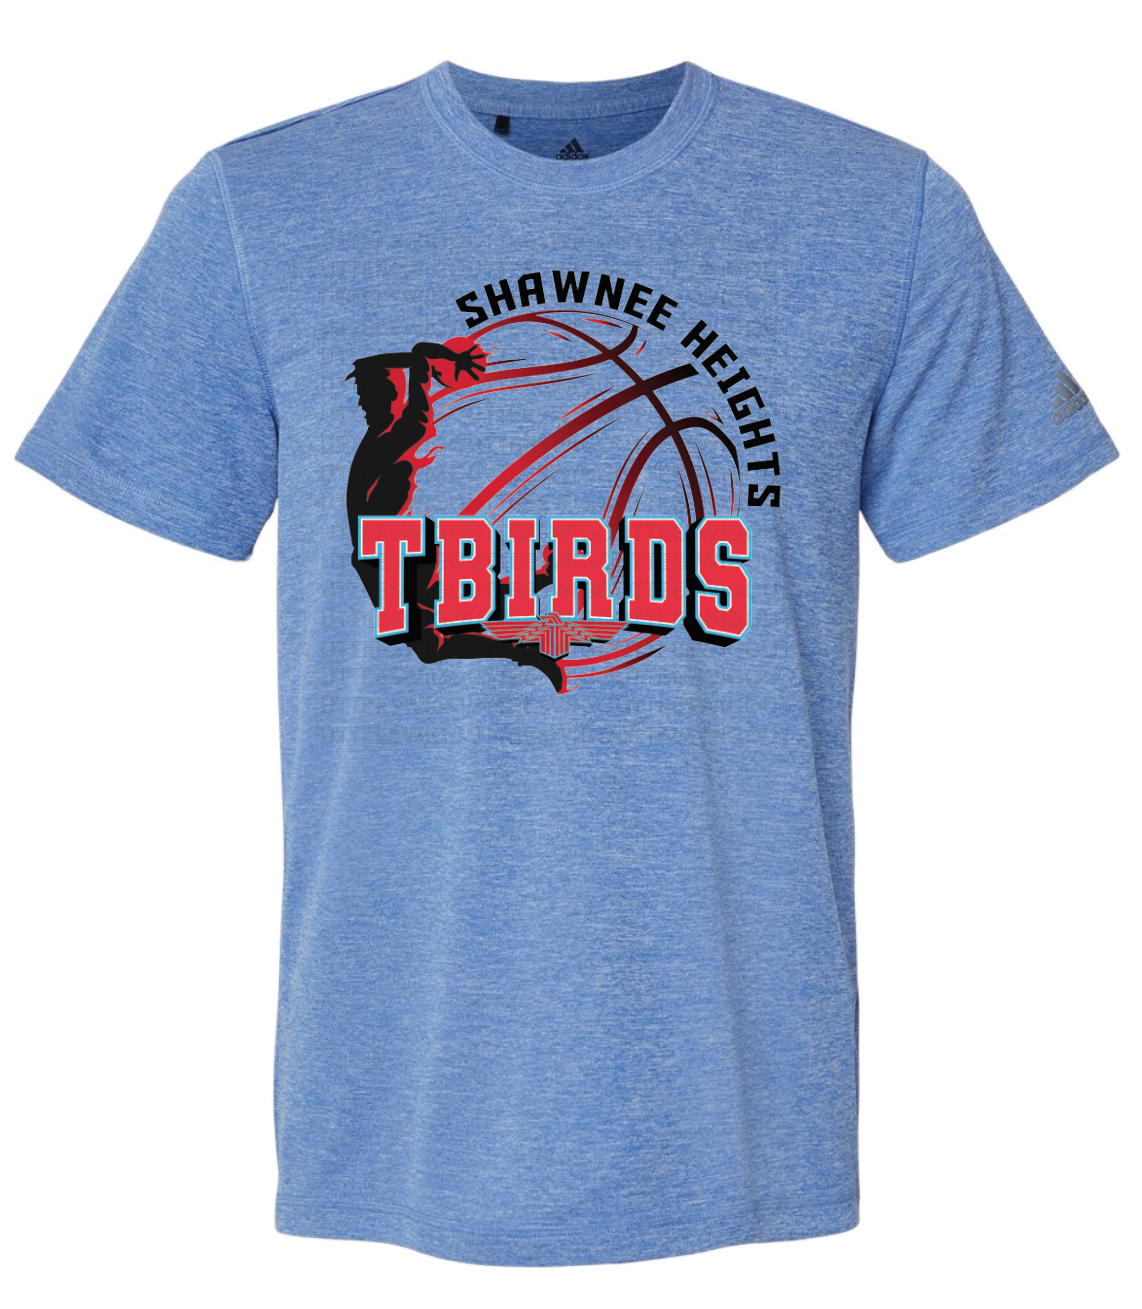 SHHS Tbirds Basketball Adidas Sports T-shirt